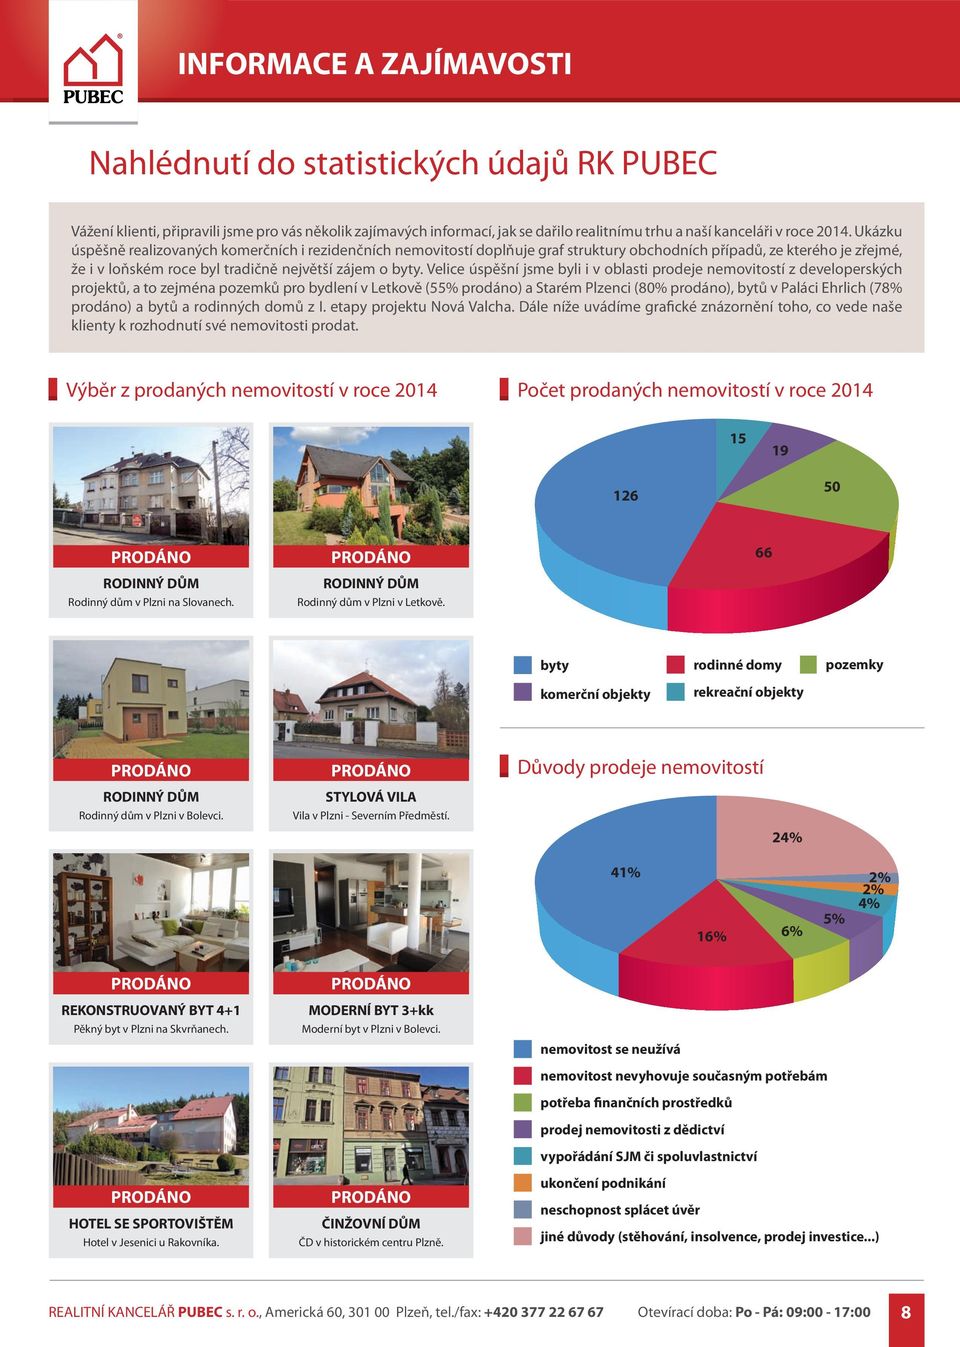 Velice úspěšní jsme byli i v oblasti prodeje nemovitostí z developerských projektů, a to zejména pozemků pro bydlení v Letkově (55% prodáno) a Starém Plzenci (80% prodáno), bytů v Paláci Ehrlich (78%